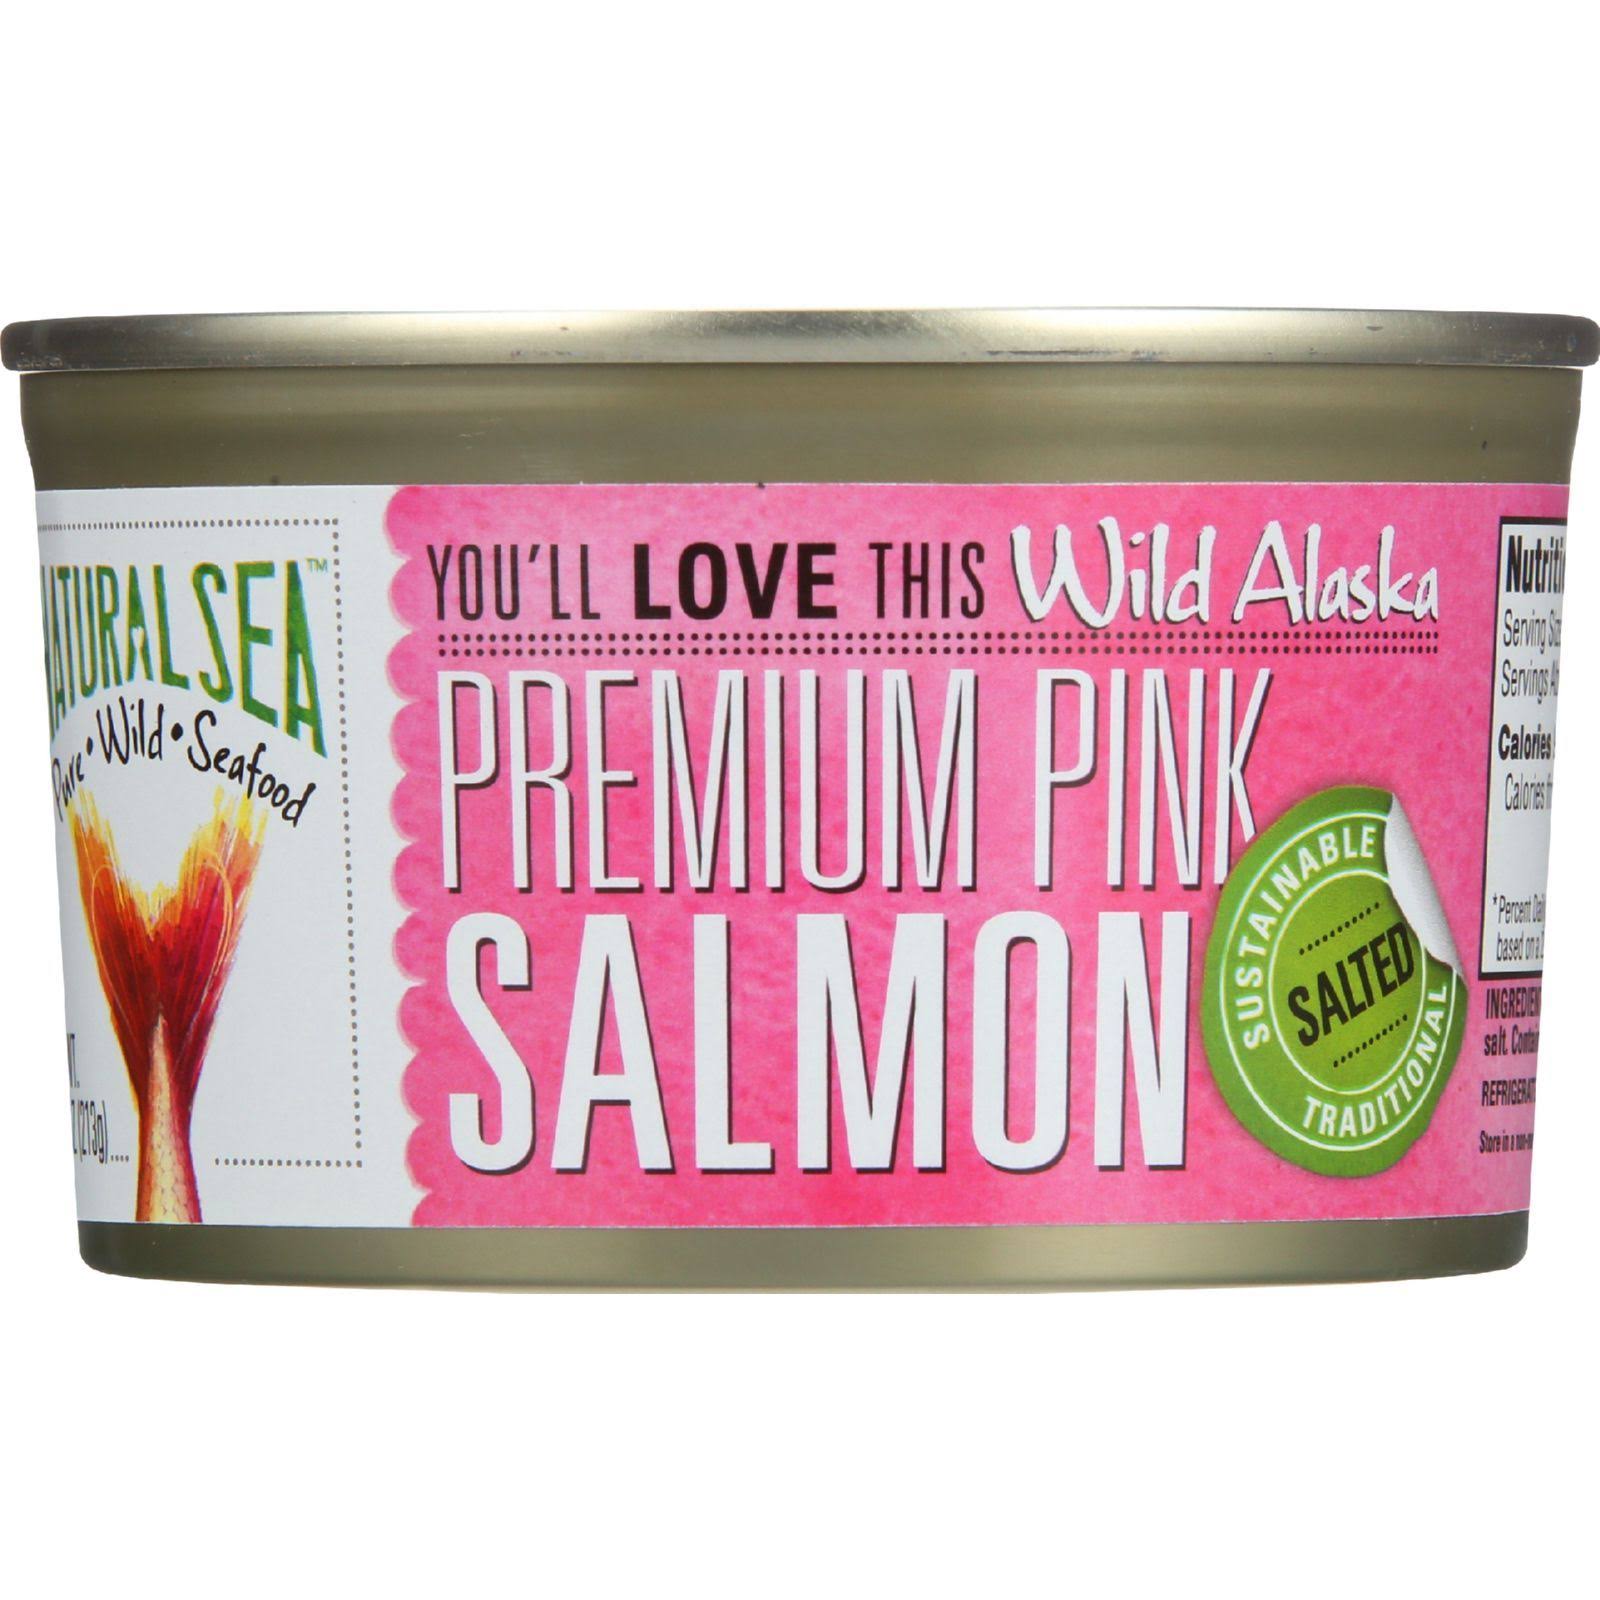 Natural Sea Wild Premium Alaskan Pink Salmon - 213g